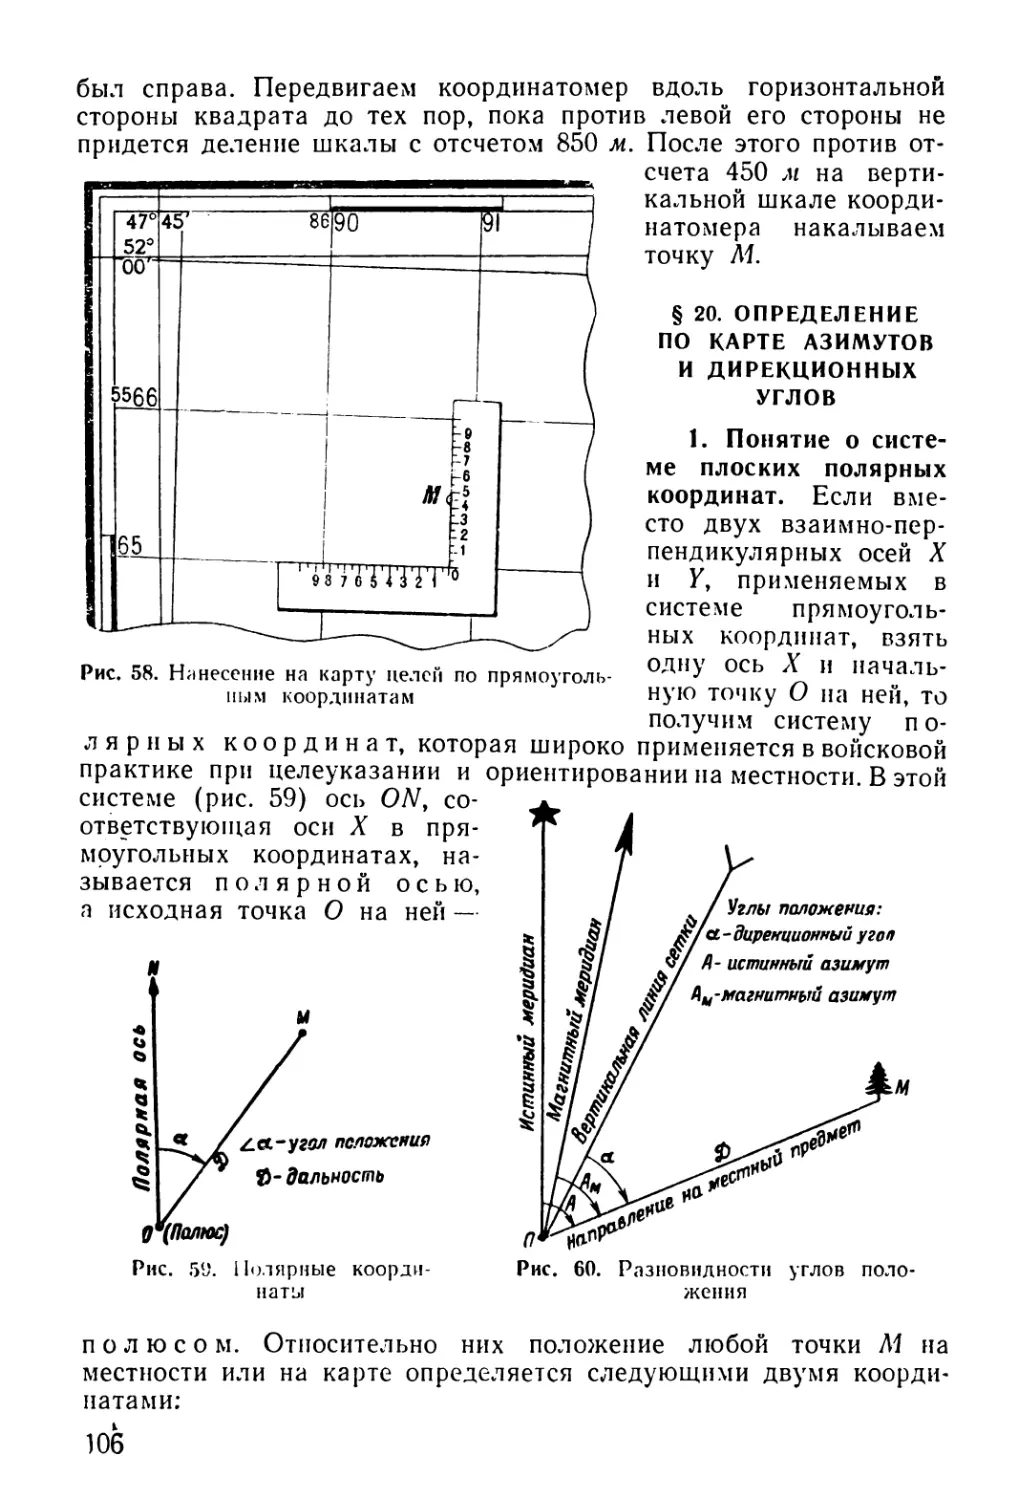 § 20. Определение по карге азимутов и дирекционных углов
1. Понятие о системе плоских полярных координат